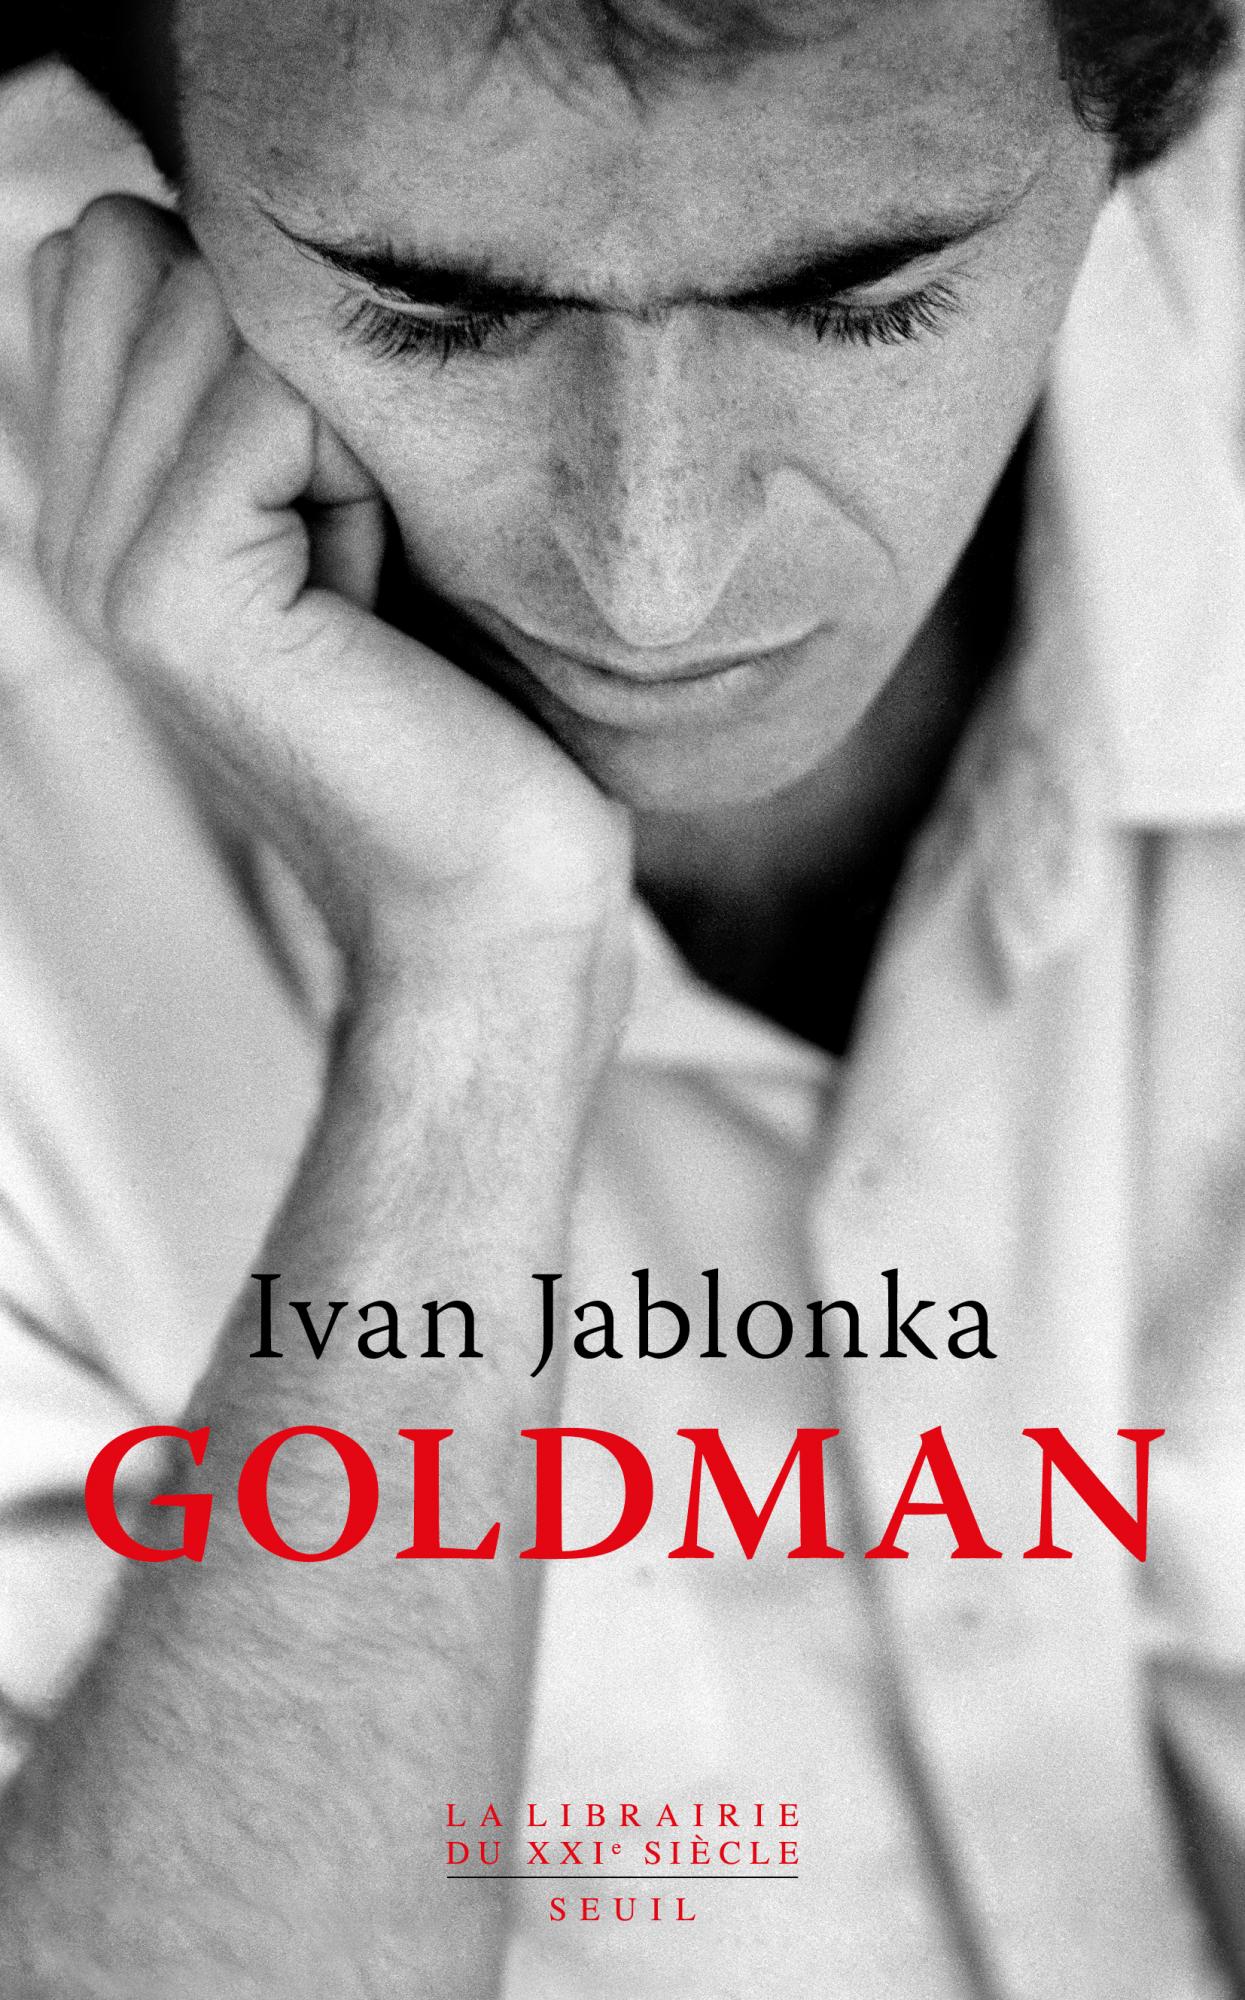 Un nouveau livre sur Jean-Jacques Goldman